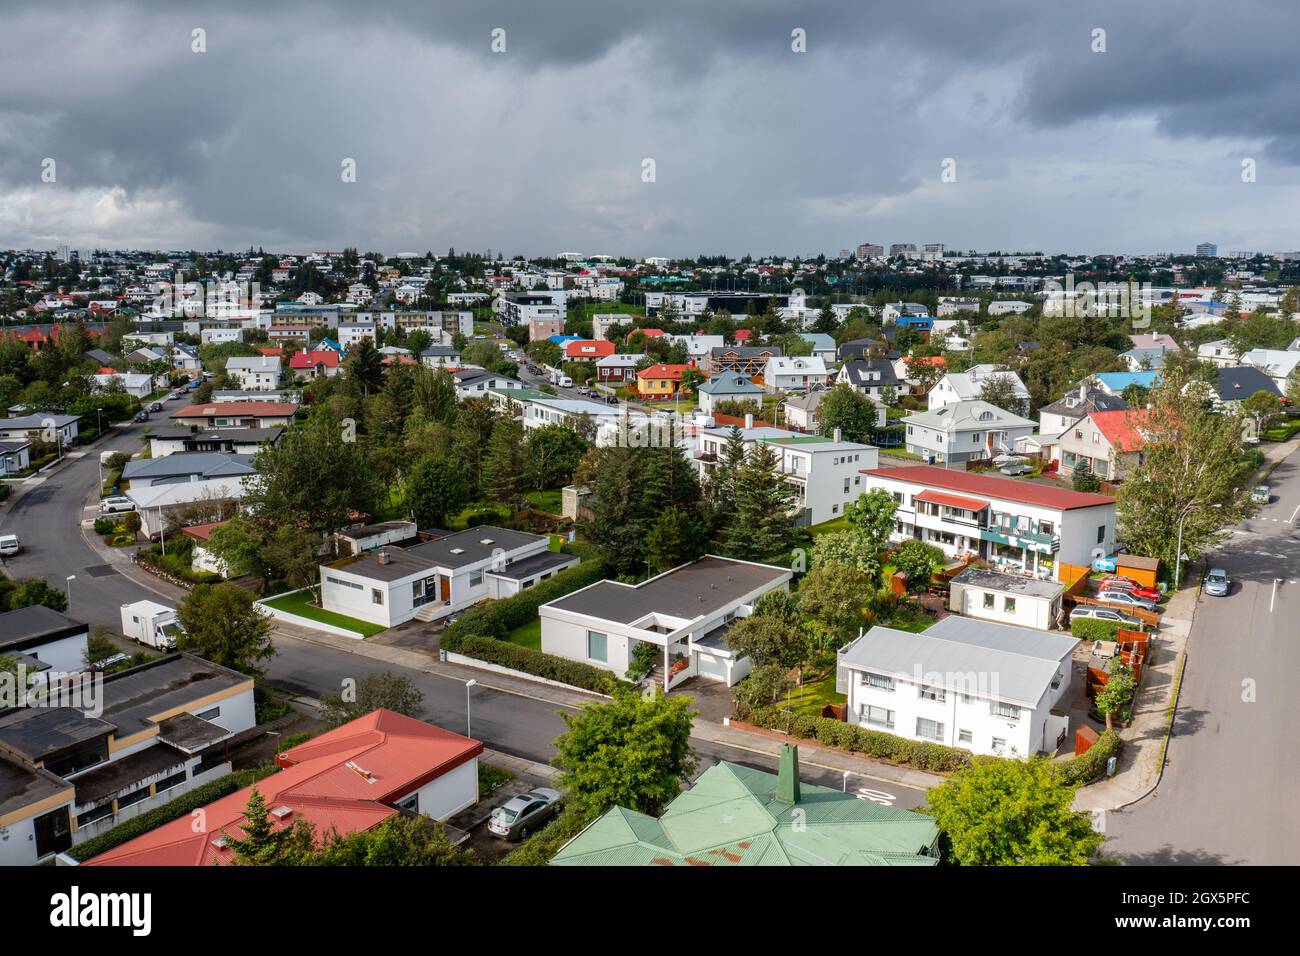 Vue aérienne des maisons de banlieue et des arbres verts situés près de la route asphaltée contre le ciel nuageux le jour d'été ennuyeux en ville. Banque D'Images